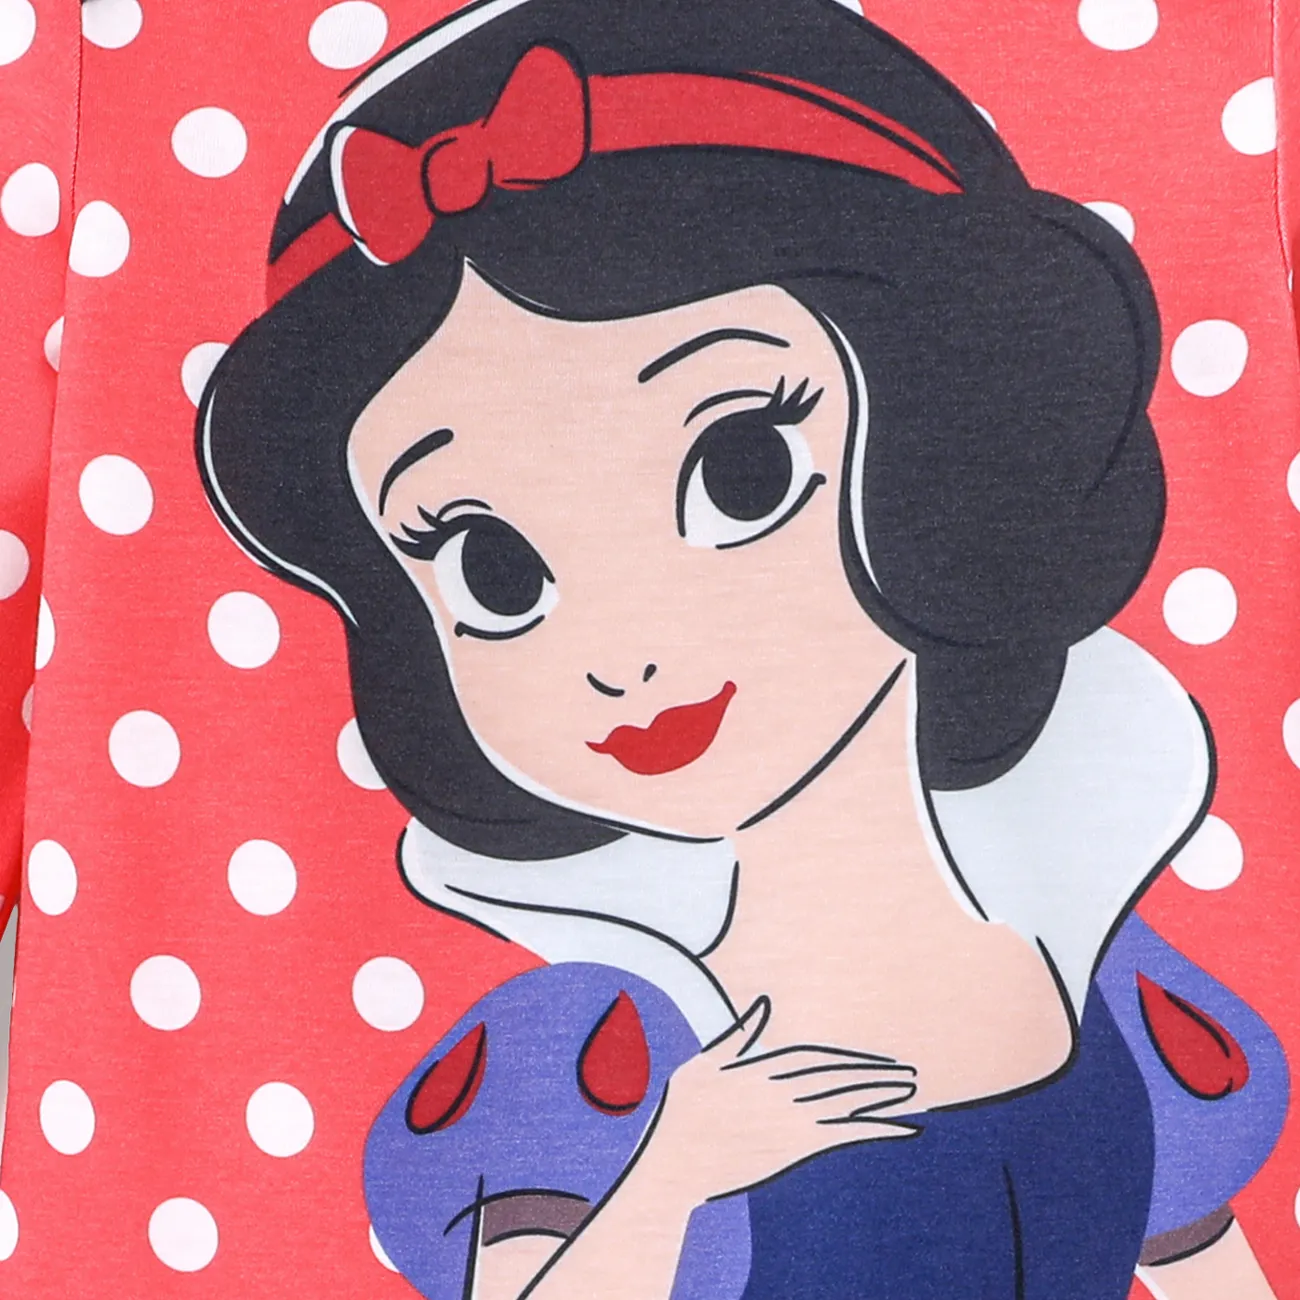 Disney Princess Baby Girl Naia™ Character & Polka Dots Print Long-sleeve Jumpsuit  Red big image 1